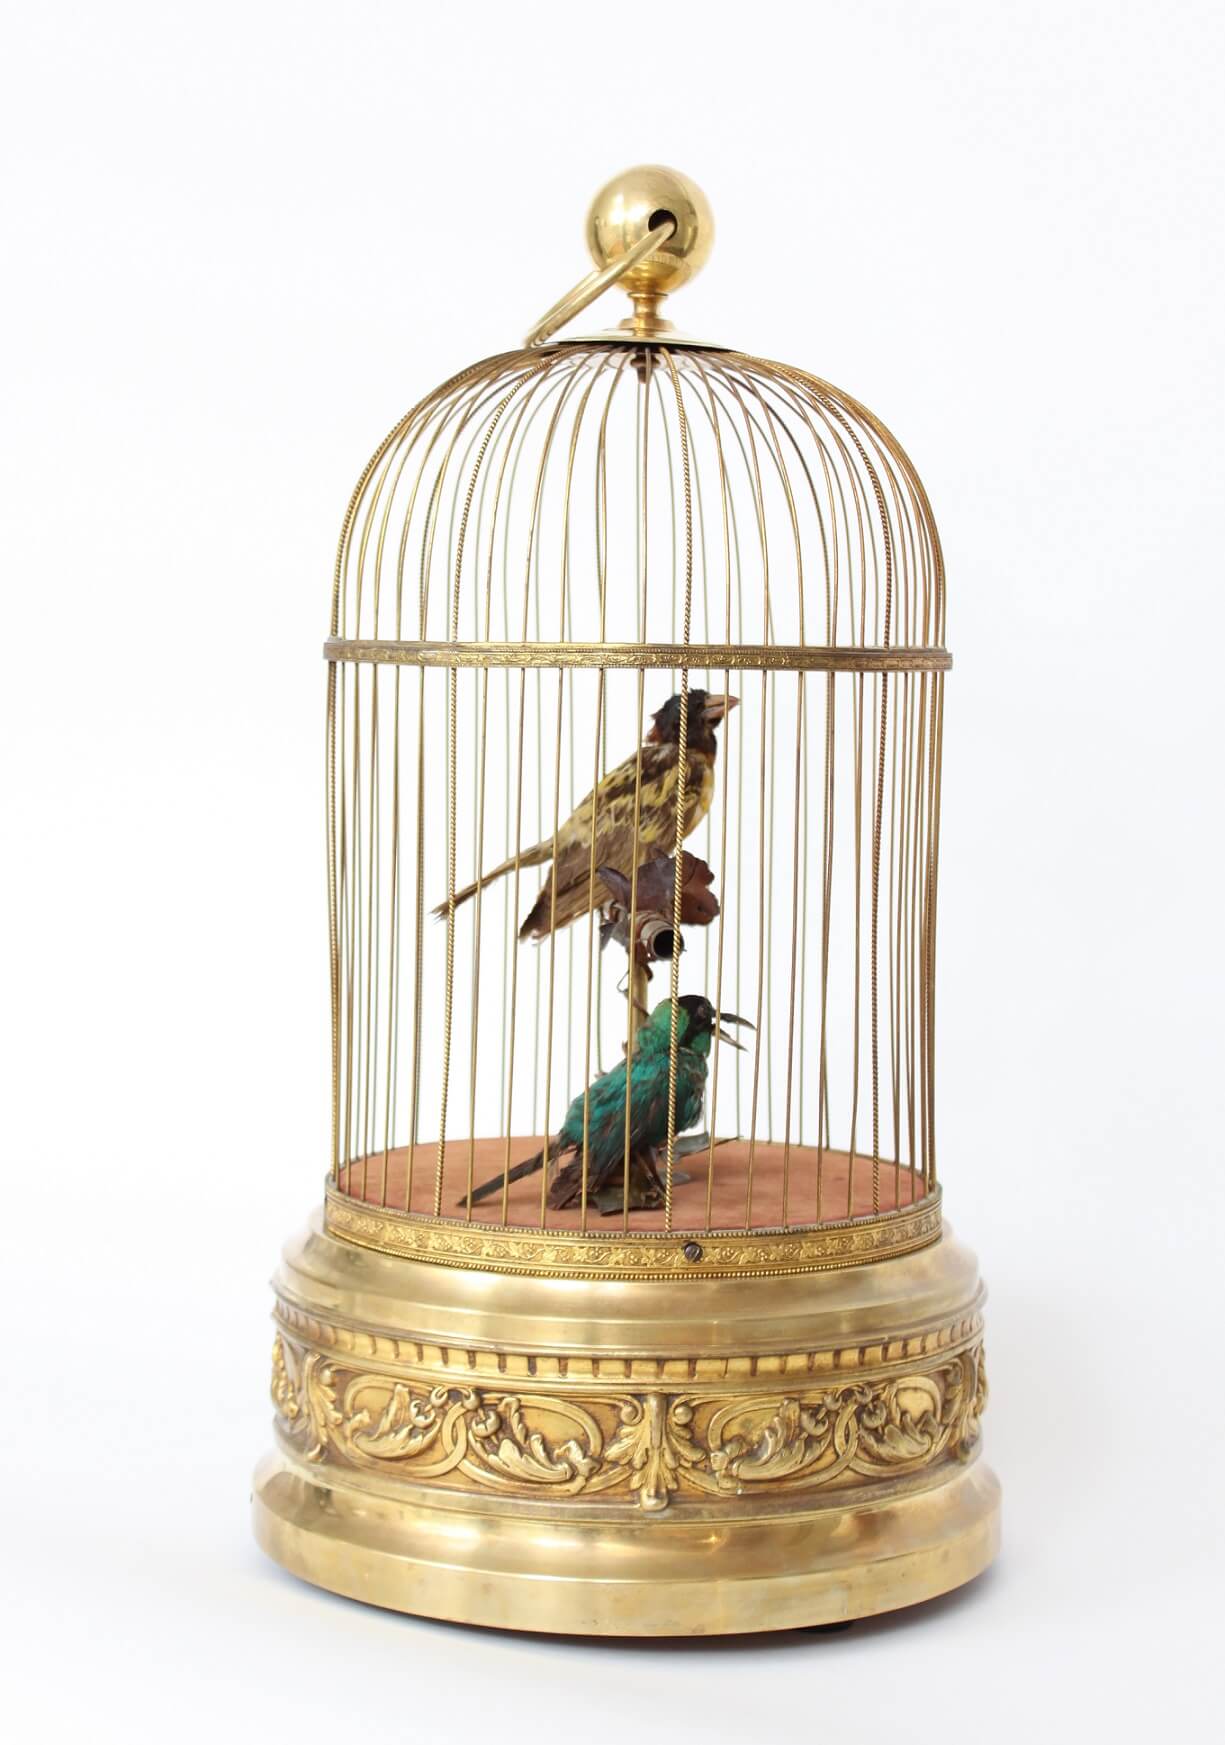 French-Bontems-automaton-animated-bird cage-mechanism-